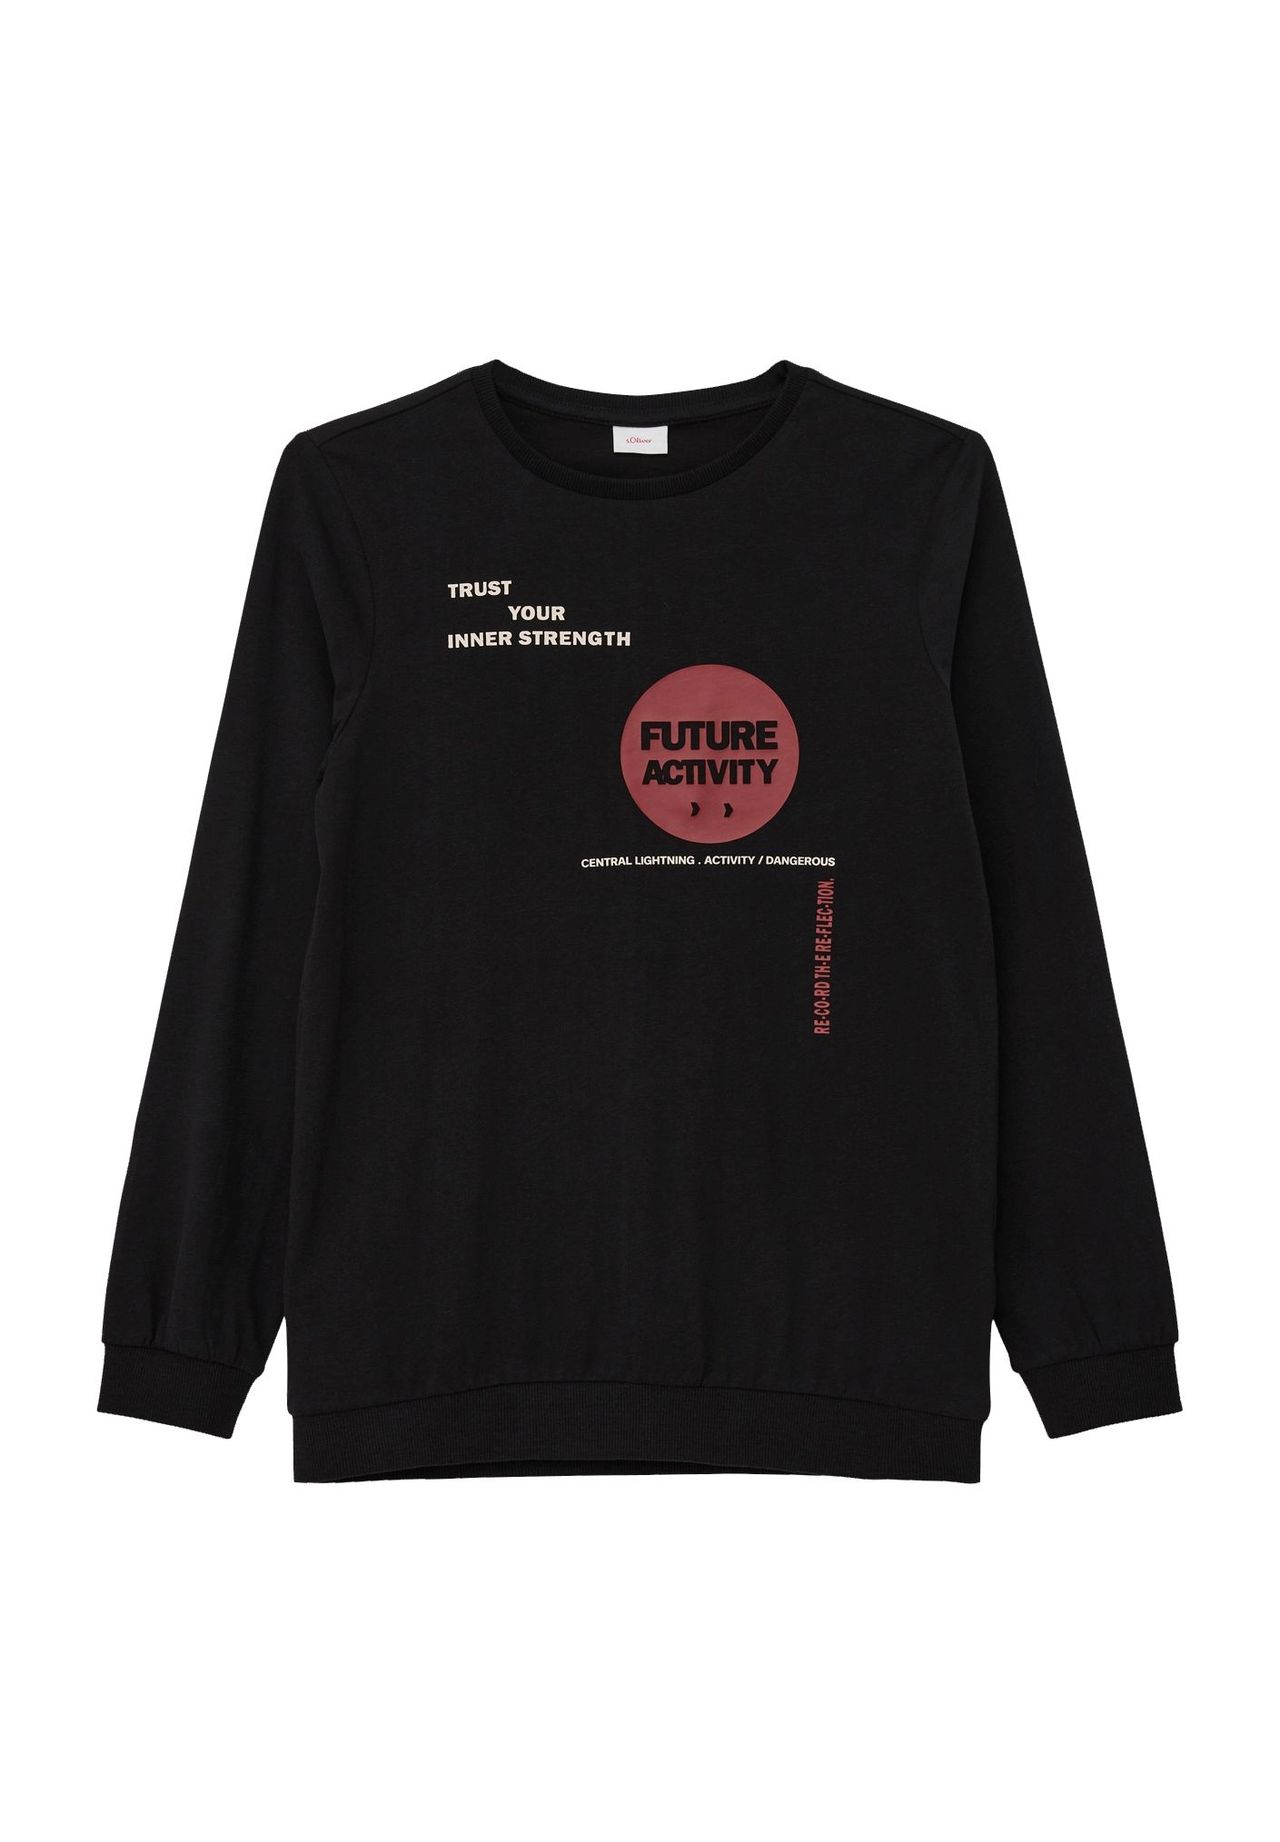 Sweatshirt schwarz baumwolle kaufen | GALERIA